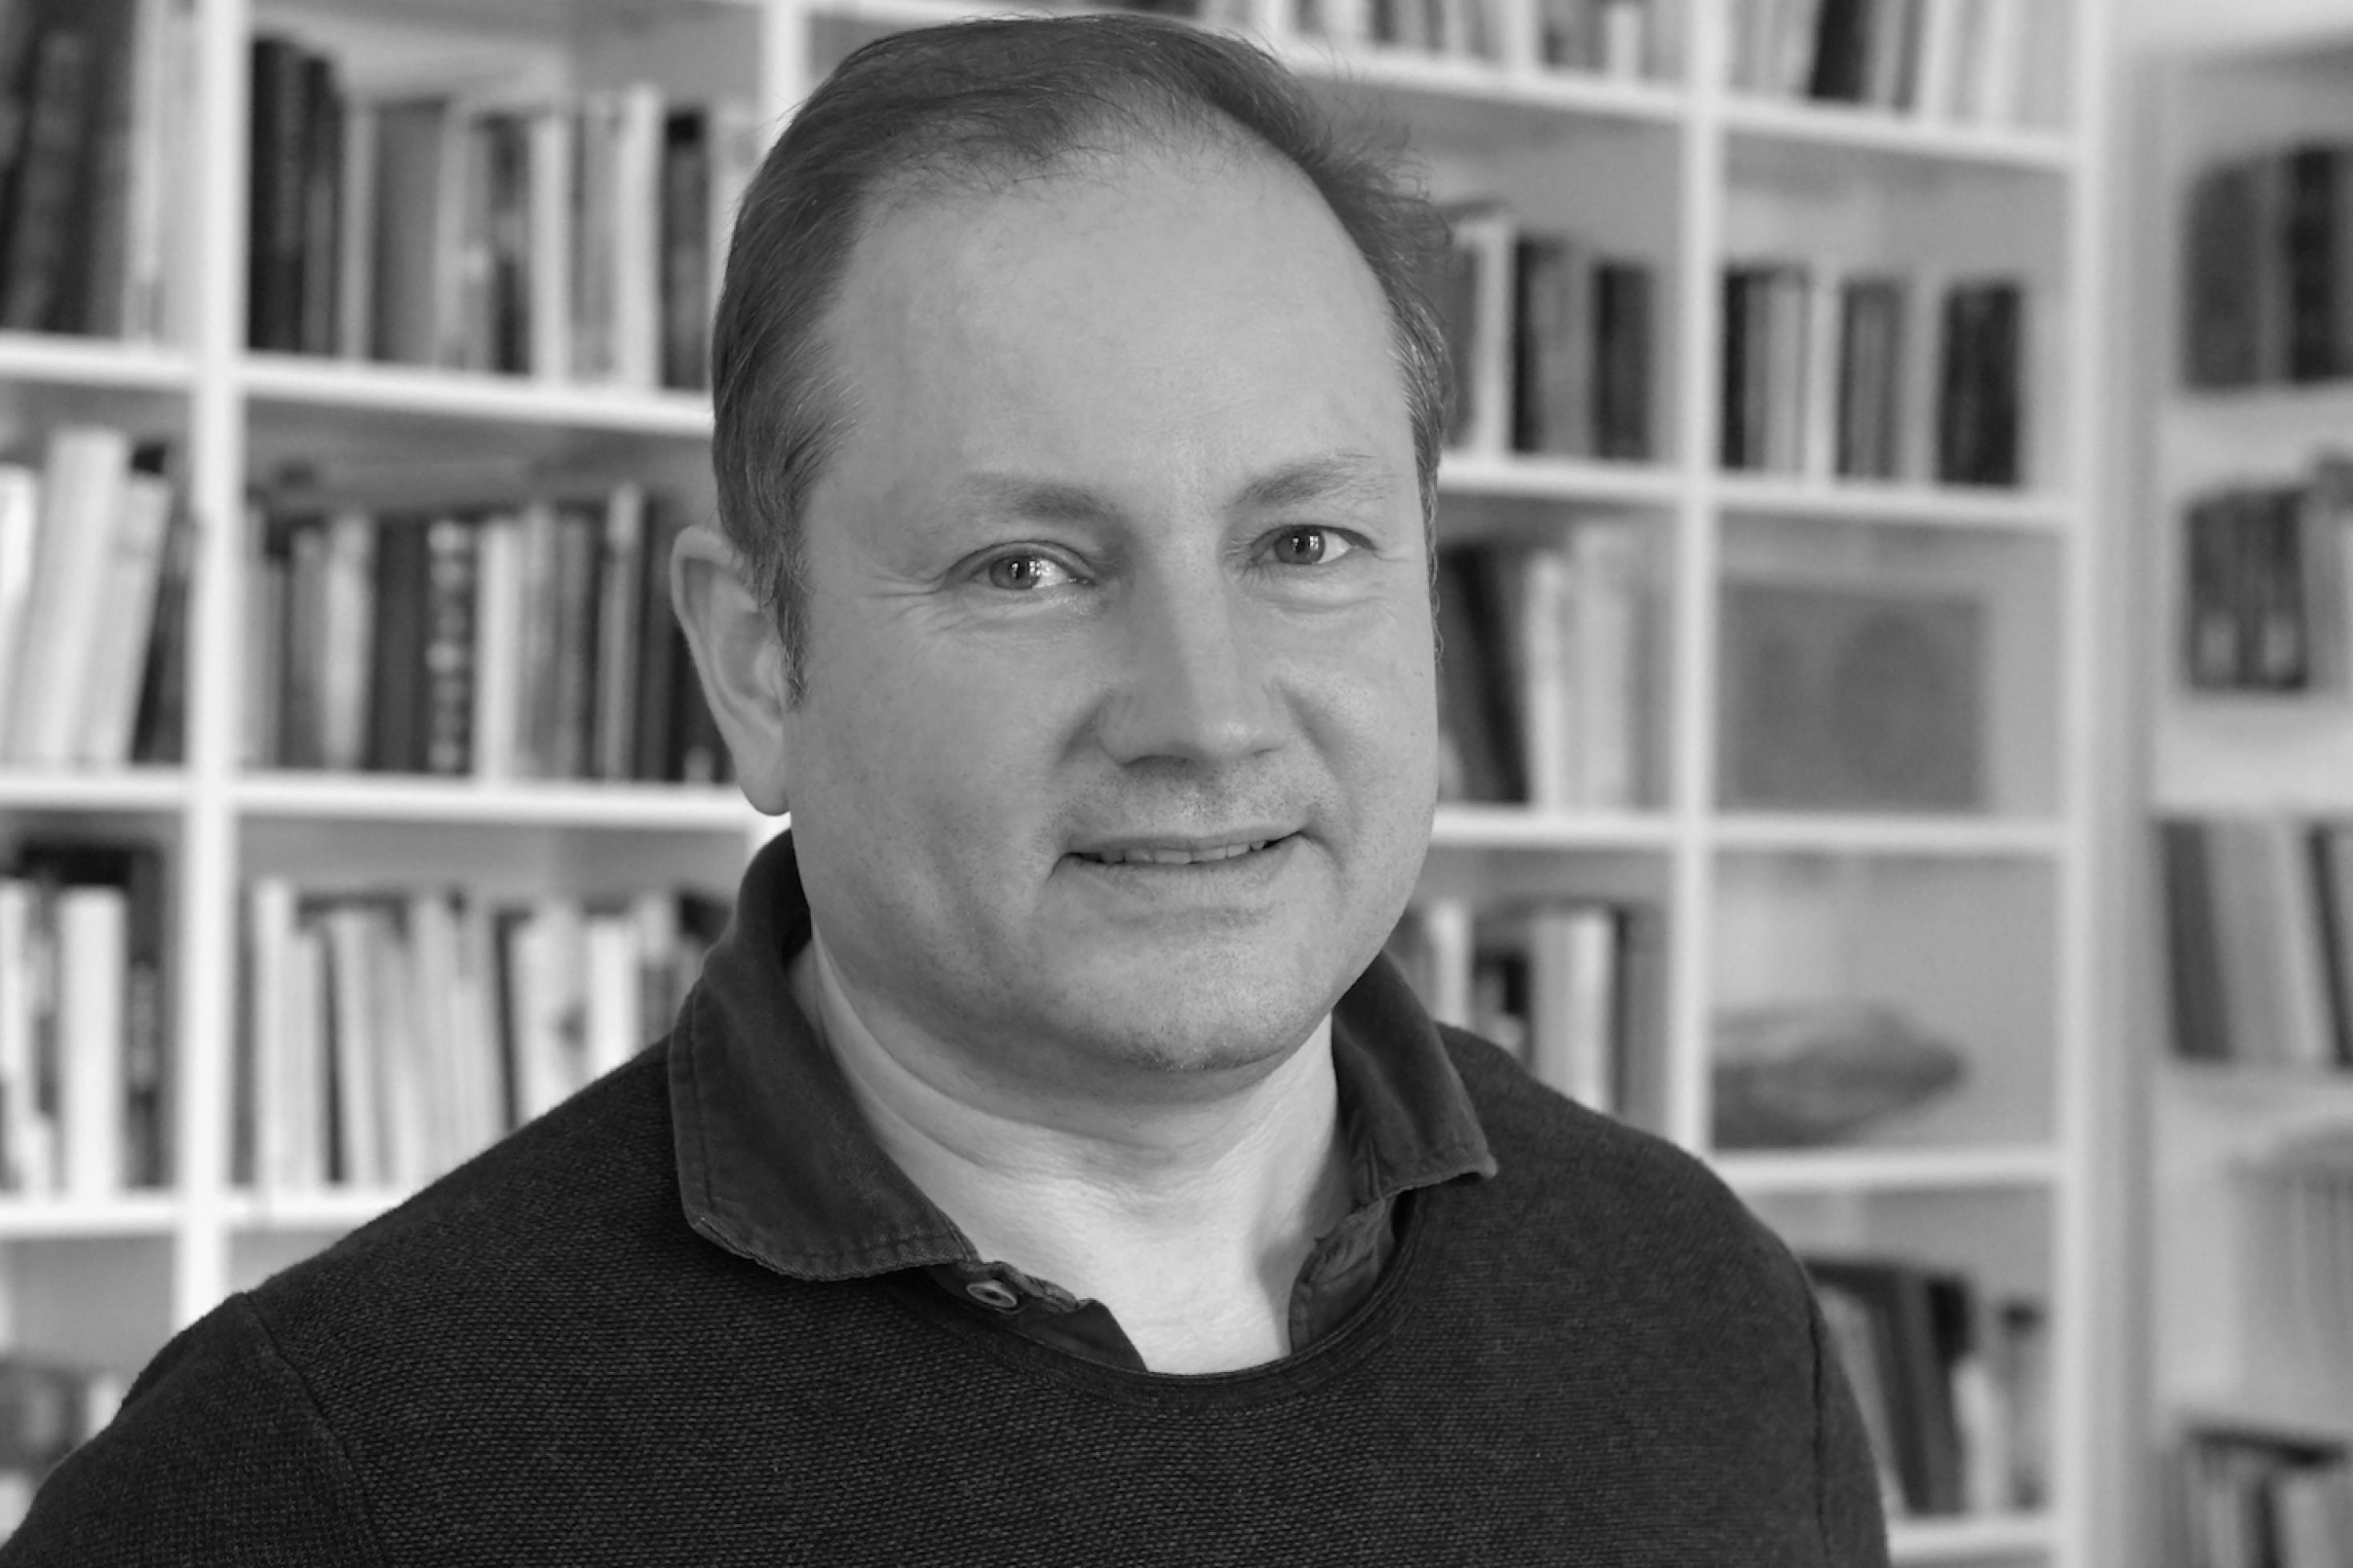 Portrait-Aufnahme von Christian Schwägerl vor einem Bücherregal in schwarz/weiß.